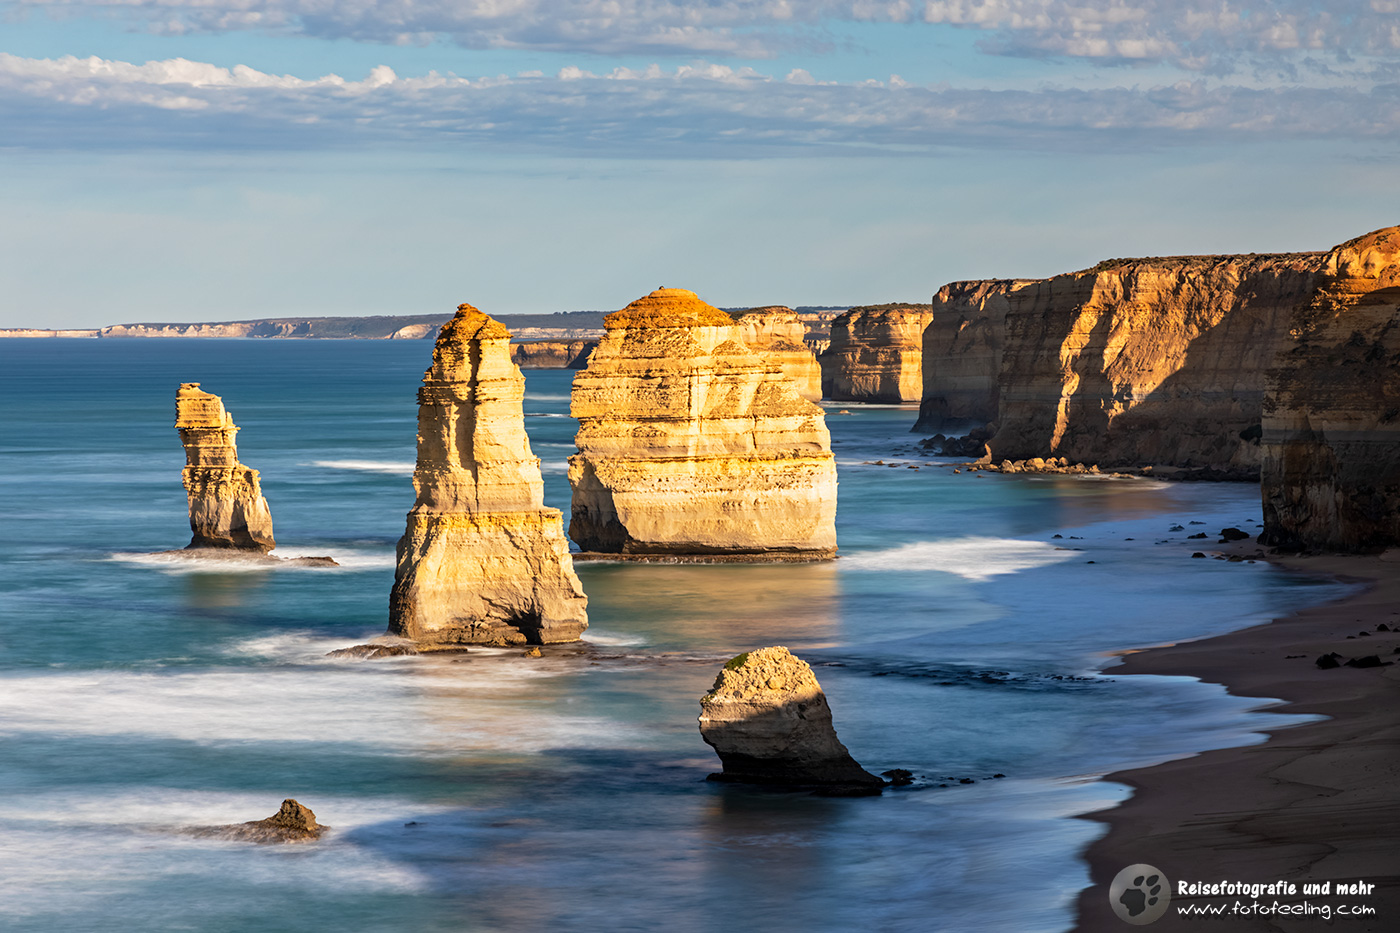 Aussicht auf die Zwölf Apostel (
Twelve Apostles), Great Ocean Road, Victoria, Australien